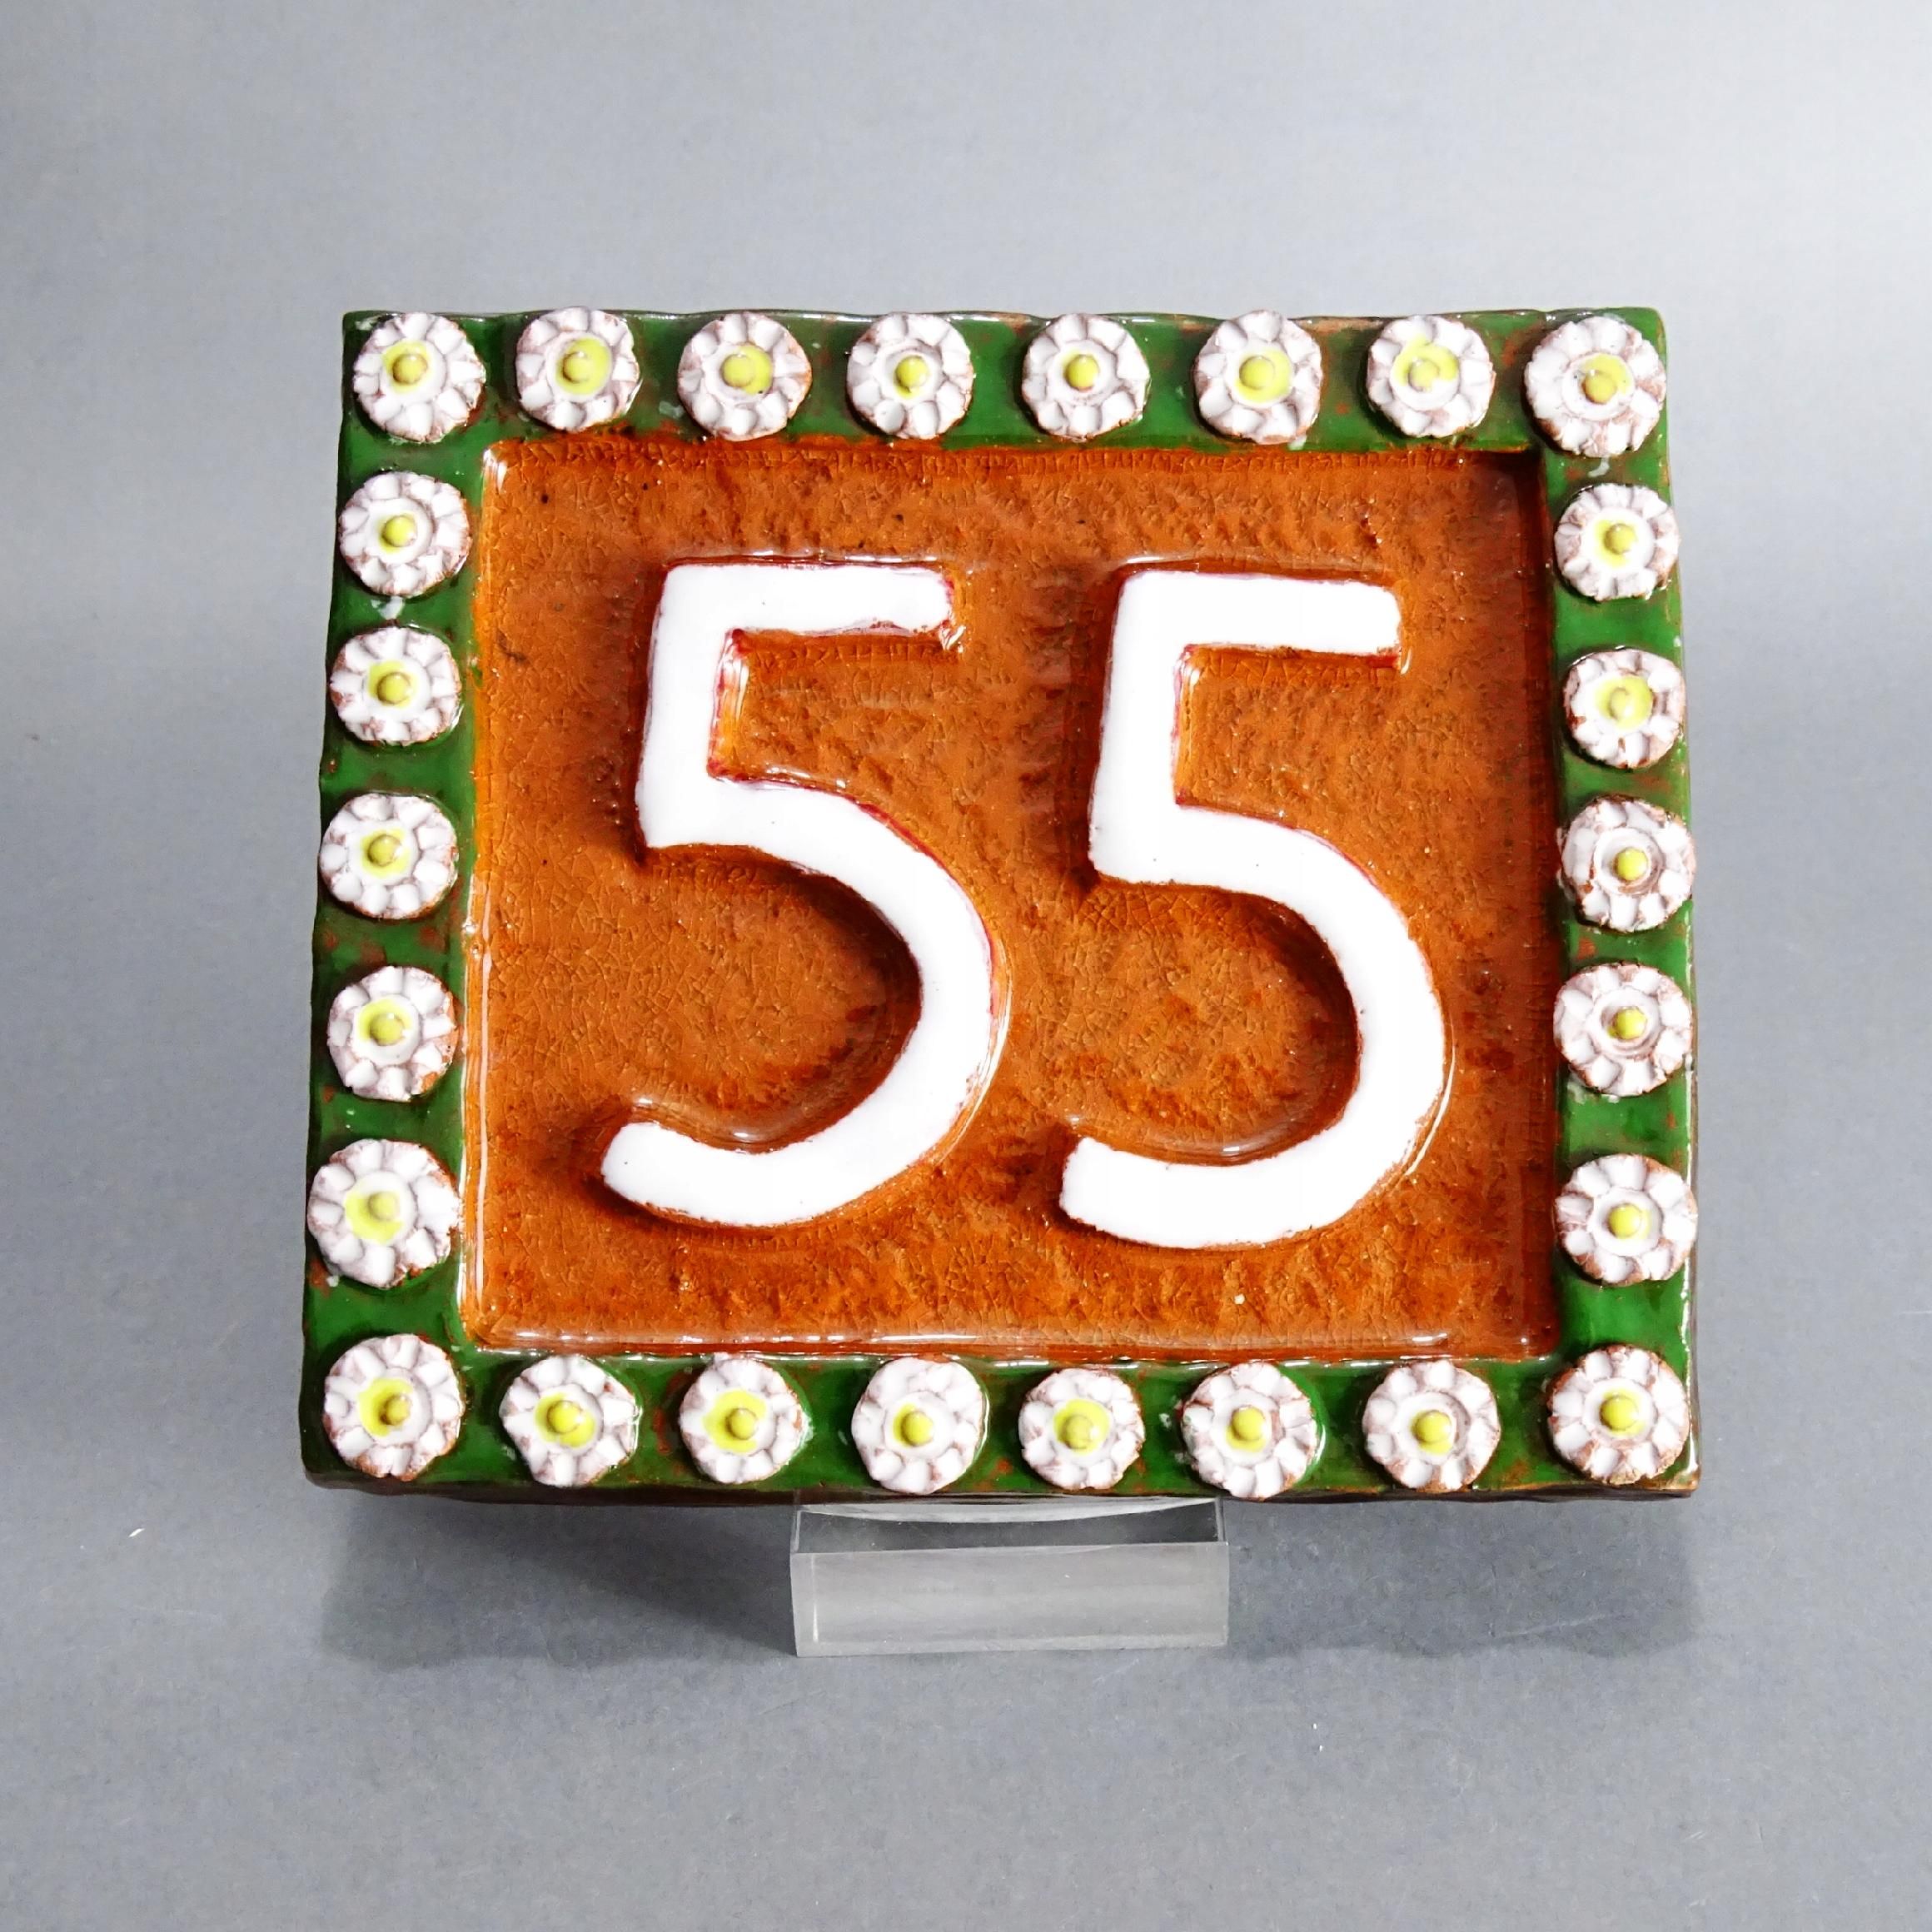 piękny ręcznie wykonany ceramiczny numer domu 55 5